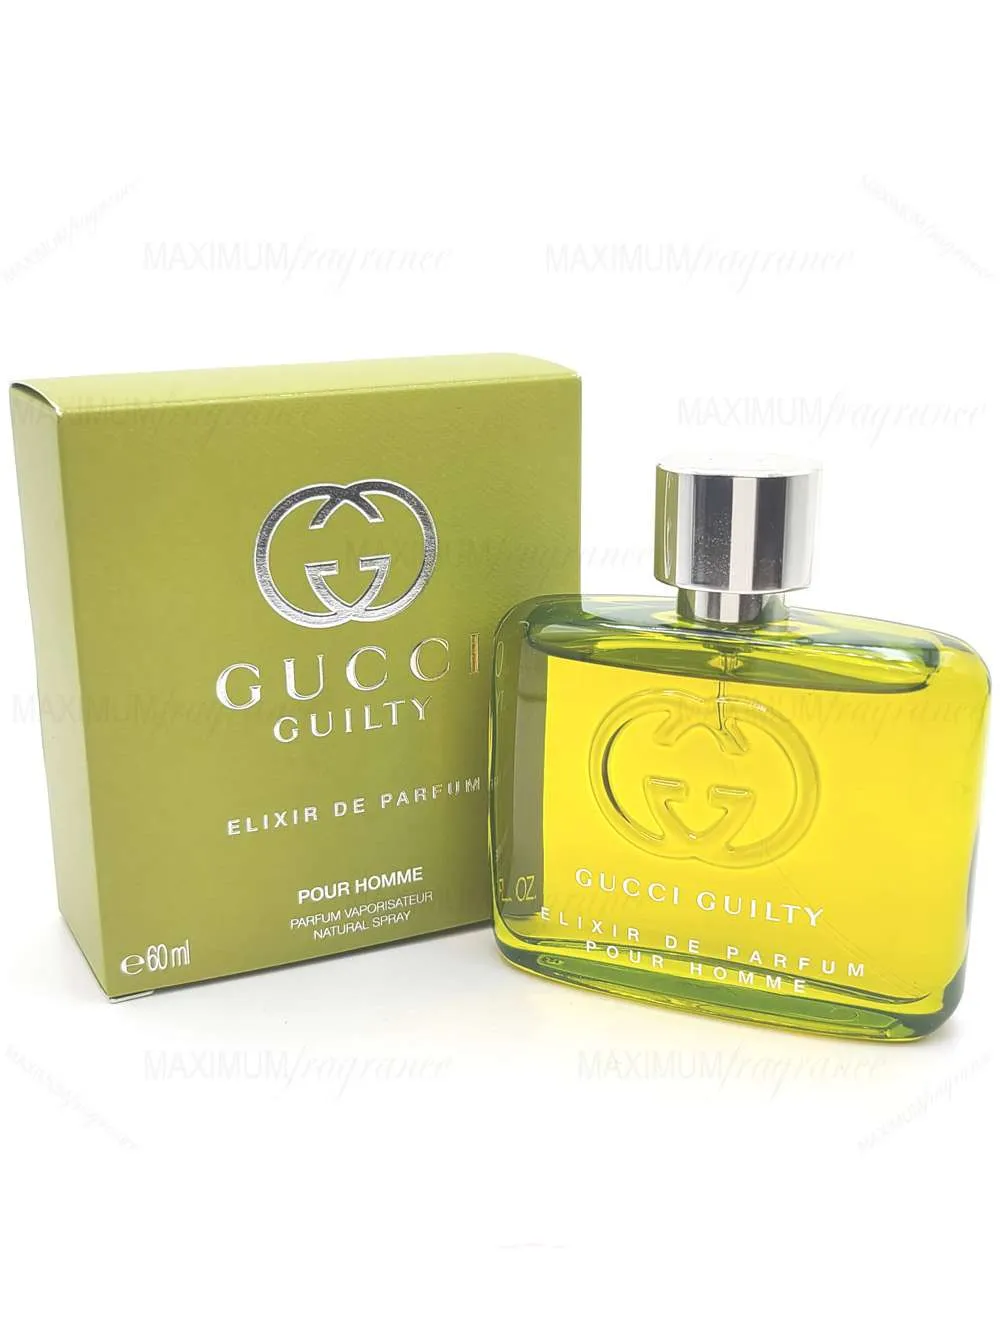 Gucci Guilty Elixir de Parfum Pour Homme, 60ml in eau de parfum